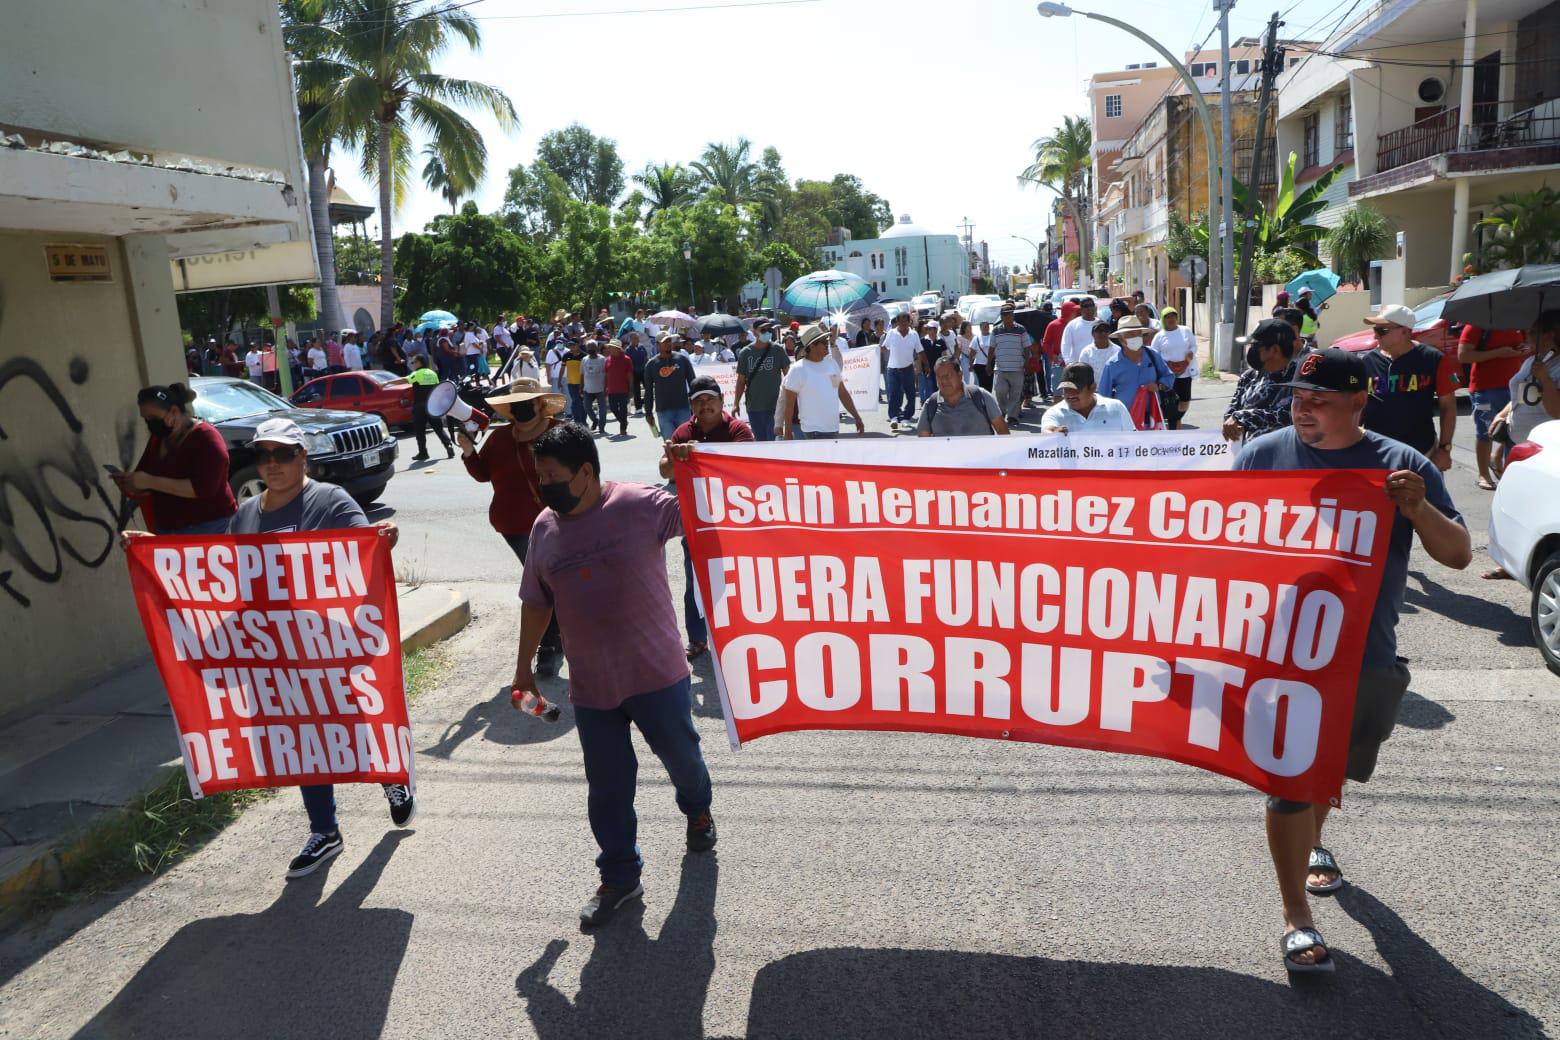 $!Vendedores de playa de Mazatlán exigen que Profepa regule permisos; denuncian hostigamiento de Oficialía Mayor